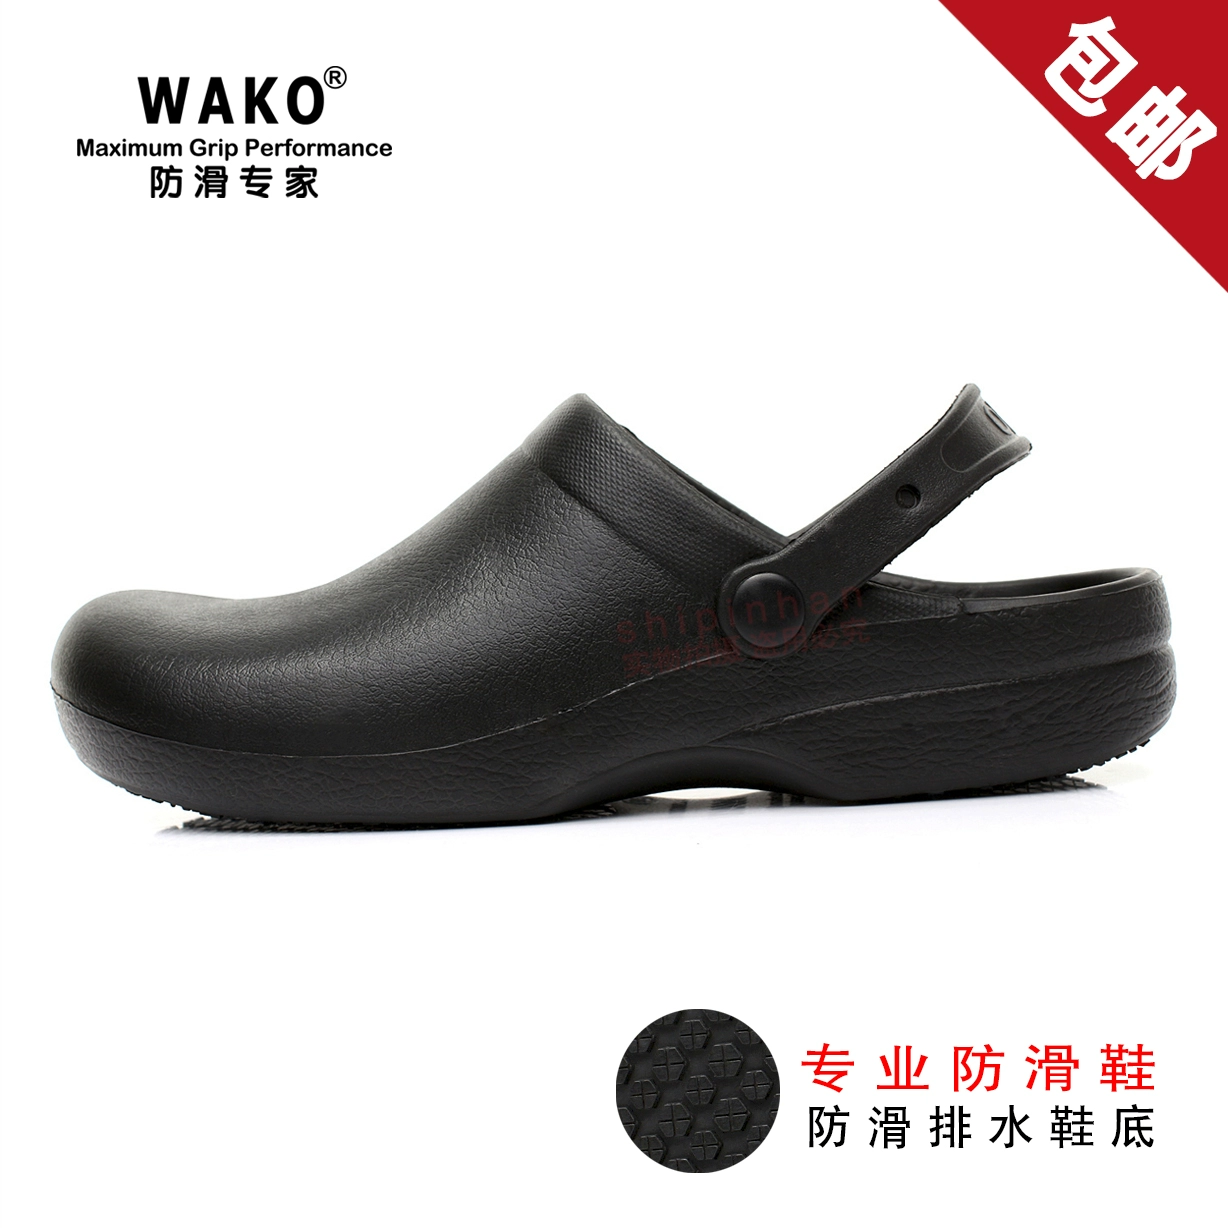 Giày đầu bếp chống trượt WAKO chống trượt giày bếp giày làm việc chuyên nghiệp dép đi trong nhà làm việc chuyên nghiệp không thấm nước và chống thấm dầu Giày nam và nữ nhẹ 9011 